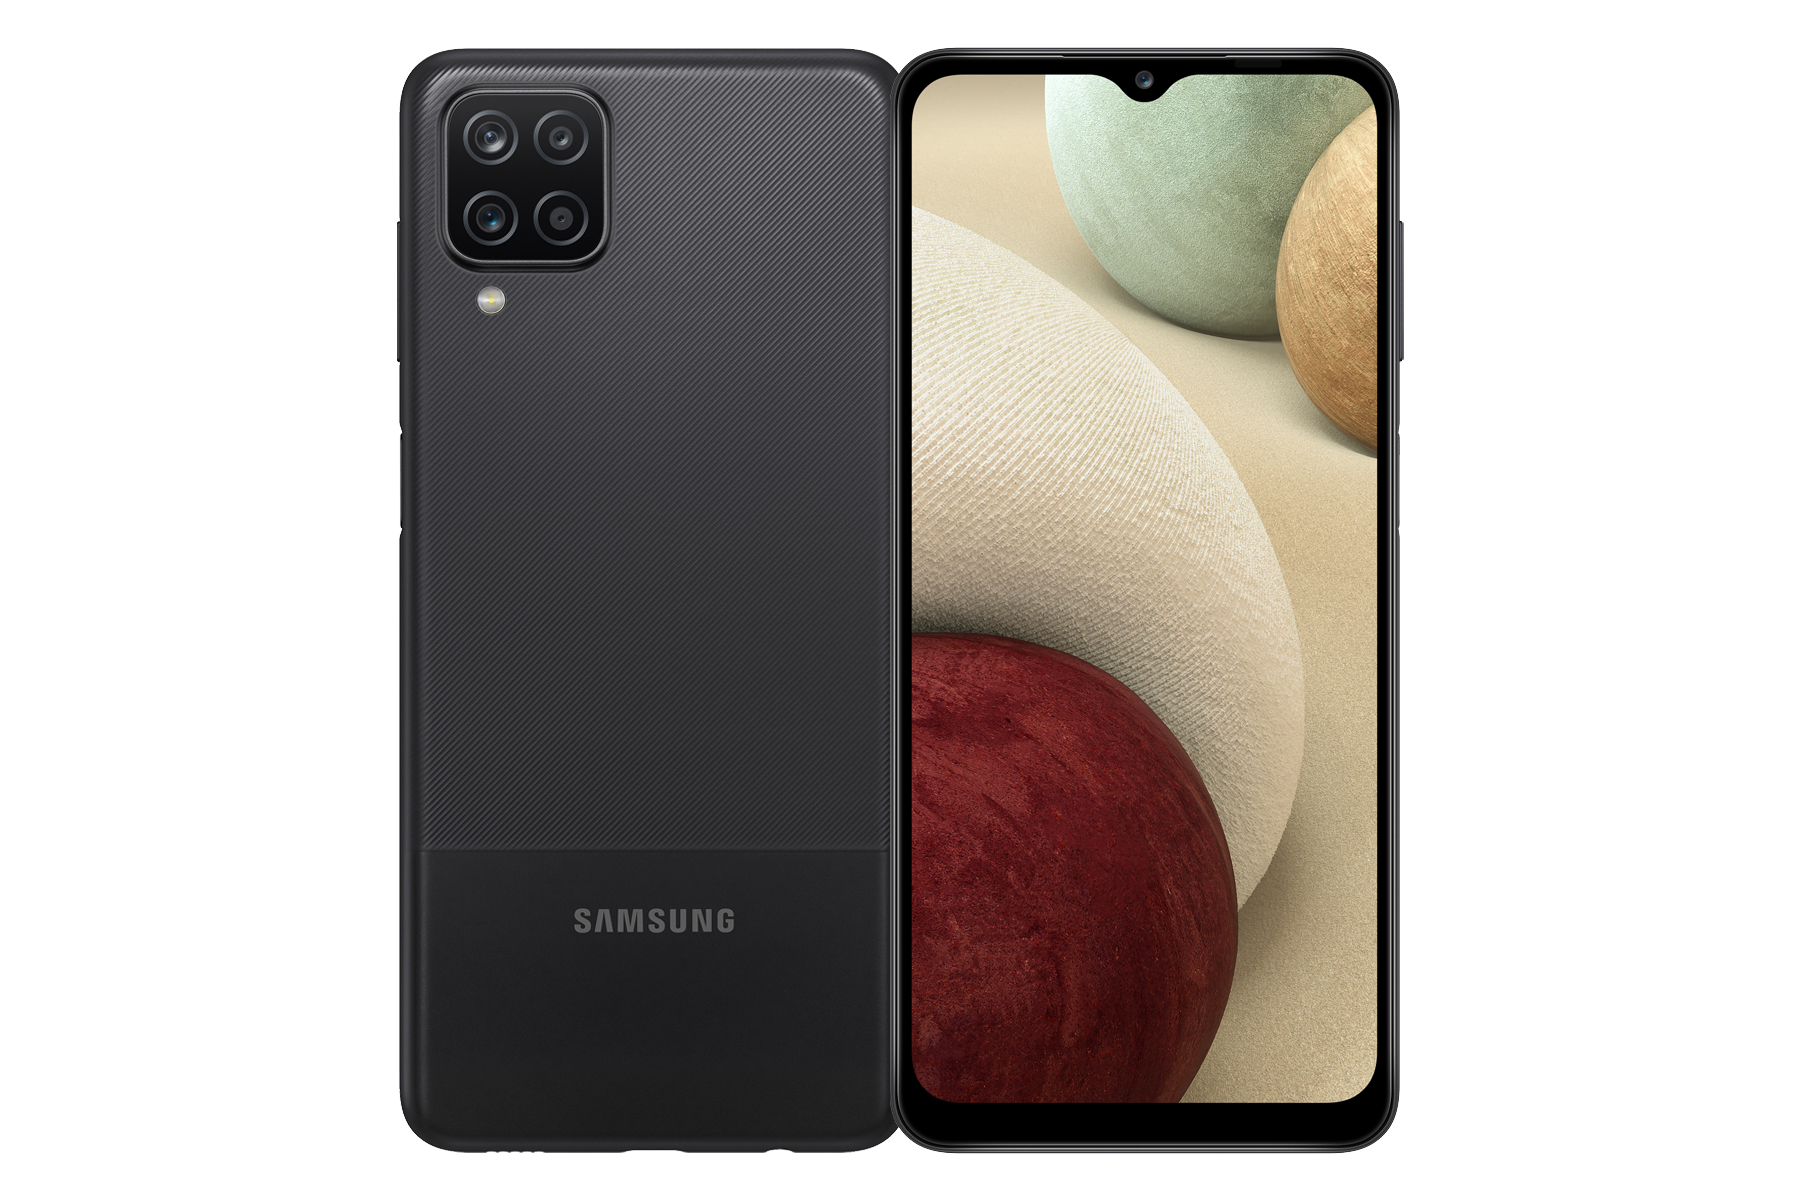 Bạn đang sử dụng Samsung Galaxy A12? Hãy xem hình ảnh liên quan đến tính năng hỗ trợ của máy để hiểu rõ hơn về sản phẩm. Thông qua hình ảnh, bạn có thể dễ dàng thấy được các tính năng tiện ích để sử dụng trong cuộc sống hàng ngày. 